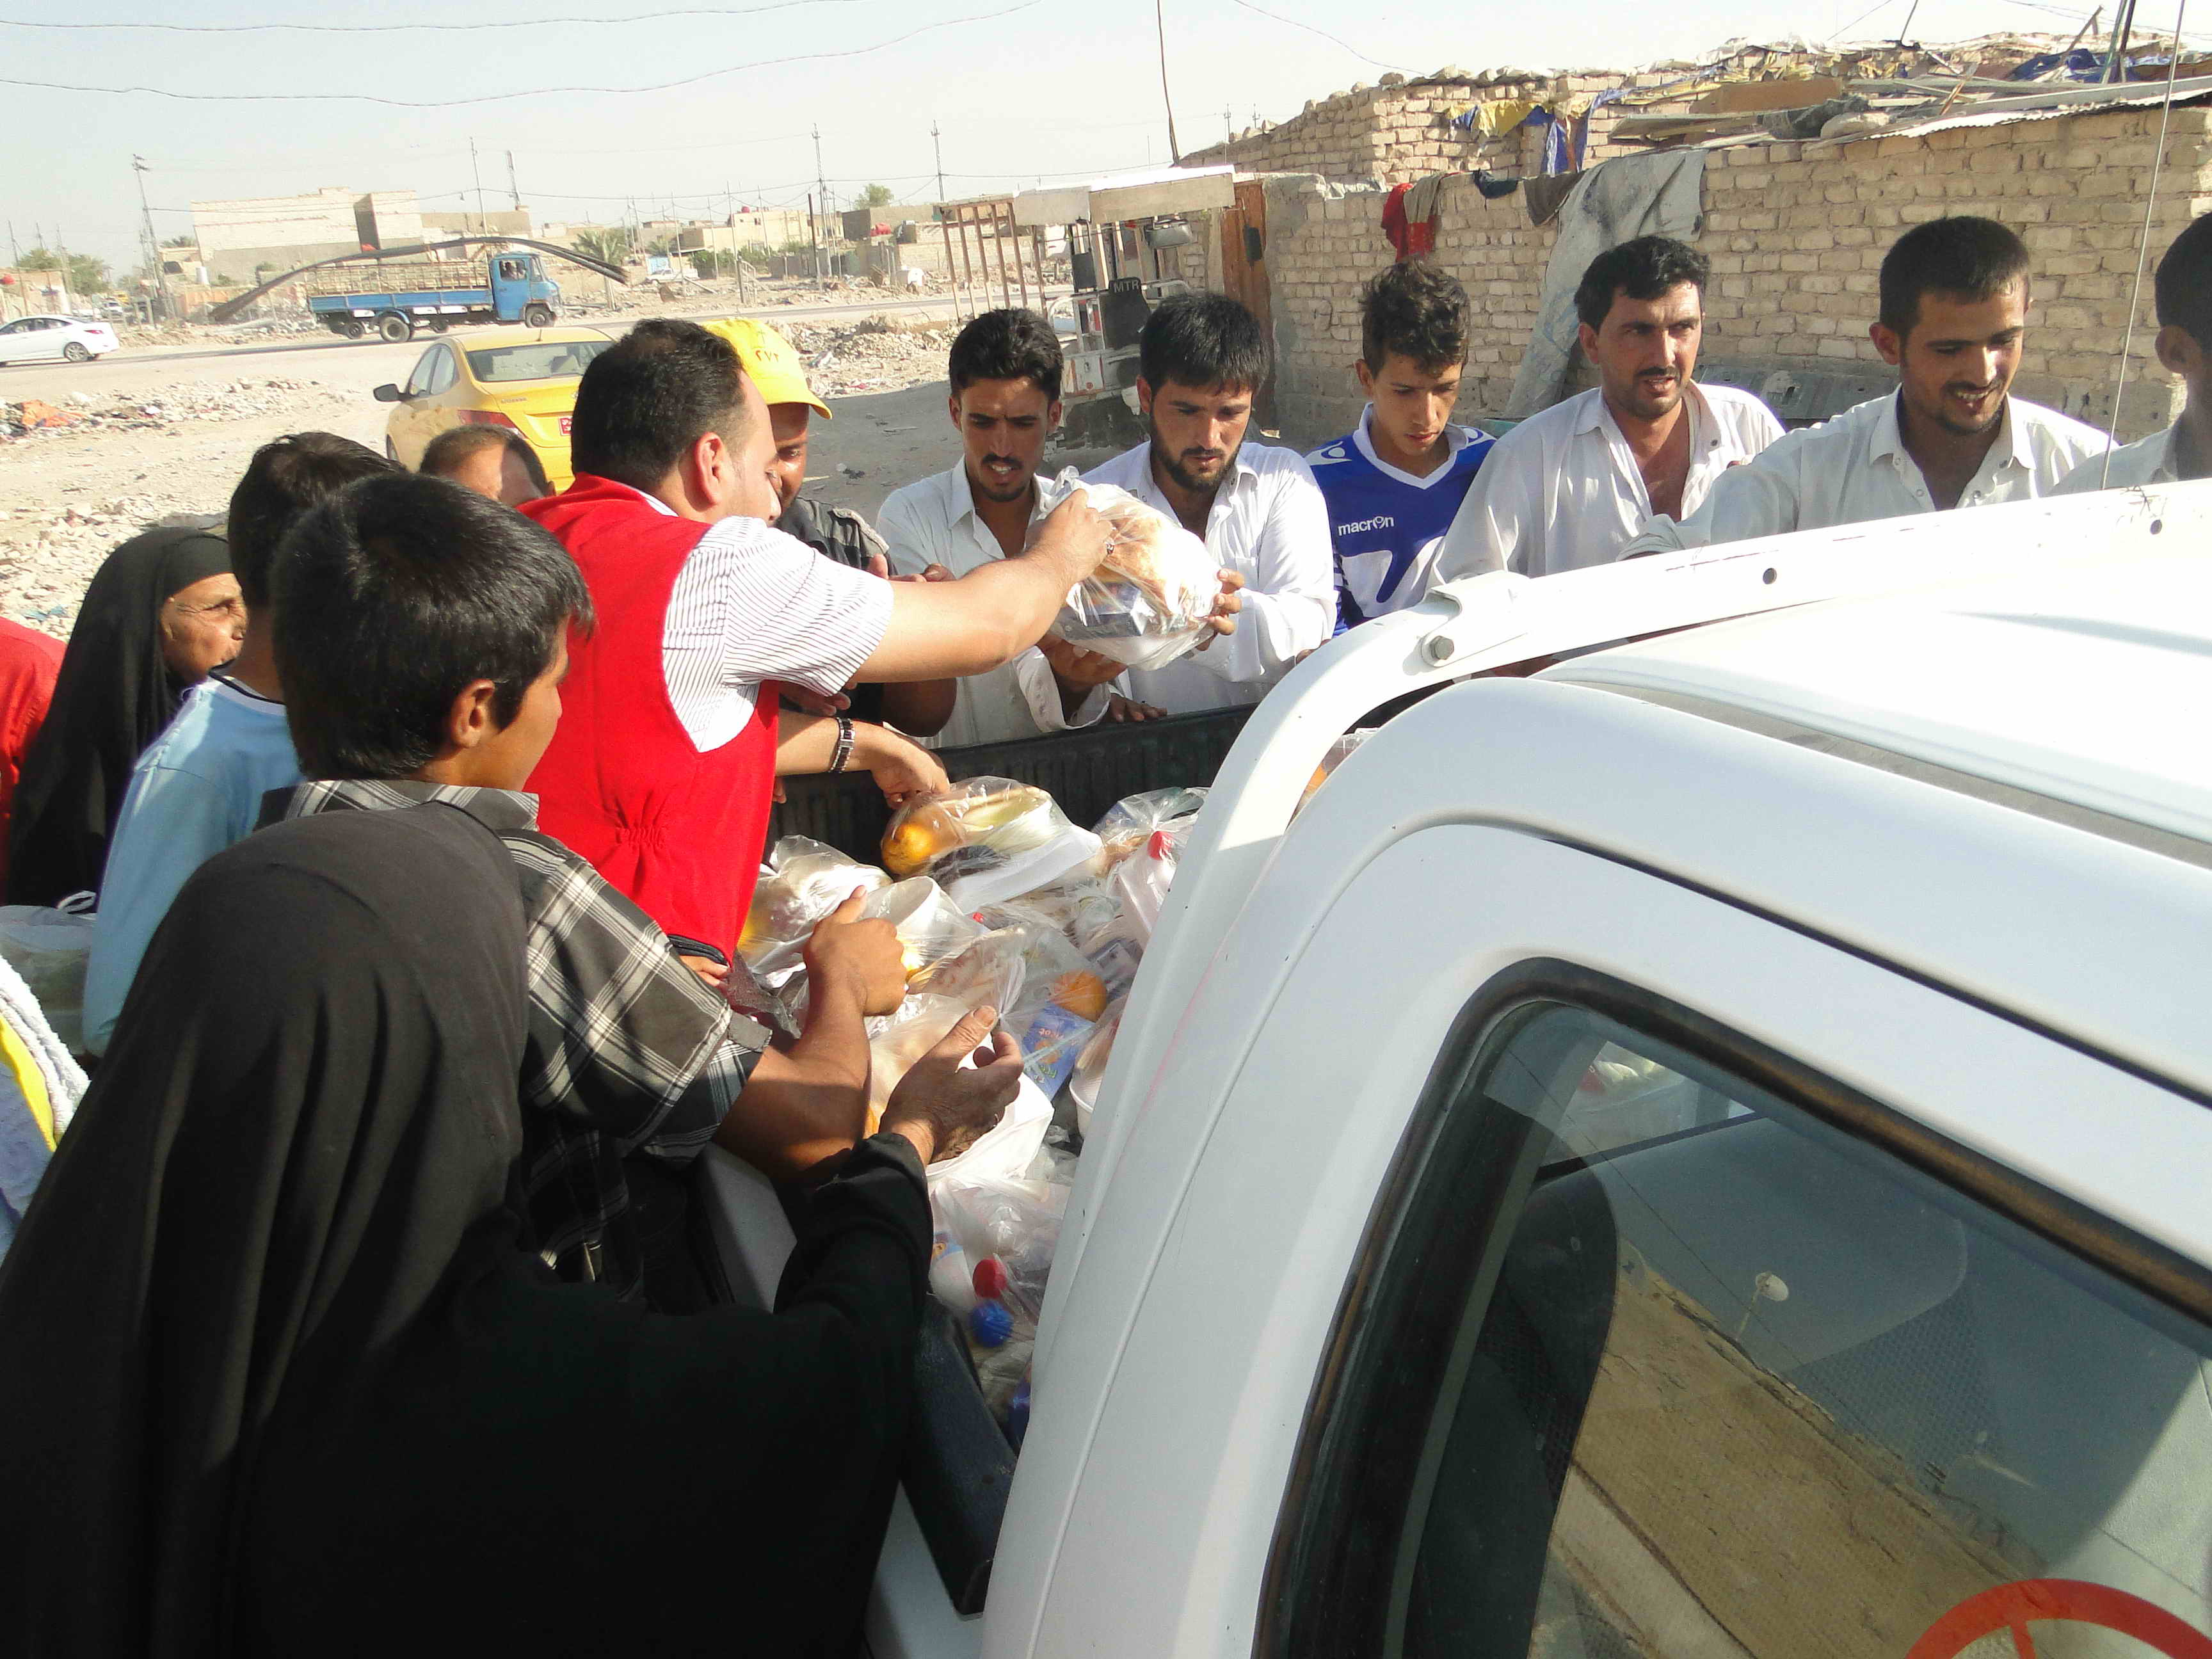 فرق الهلال الاحمر العراقي تقوم بتوزيع السلات الغذائية و وجبات الافطار للنازحين في النجف الاشرف وديالى